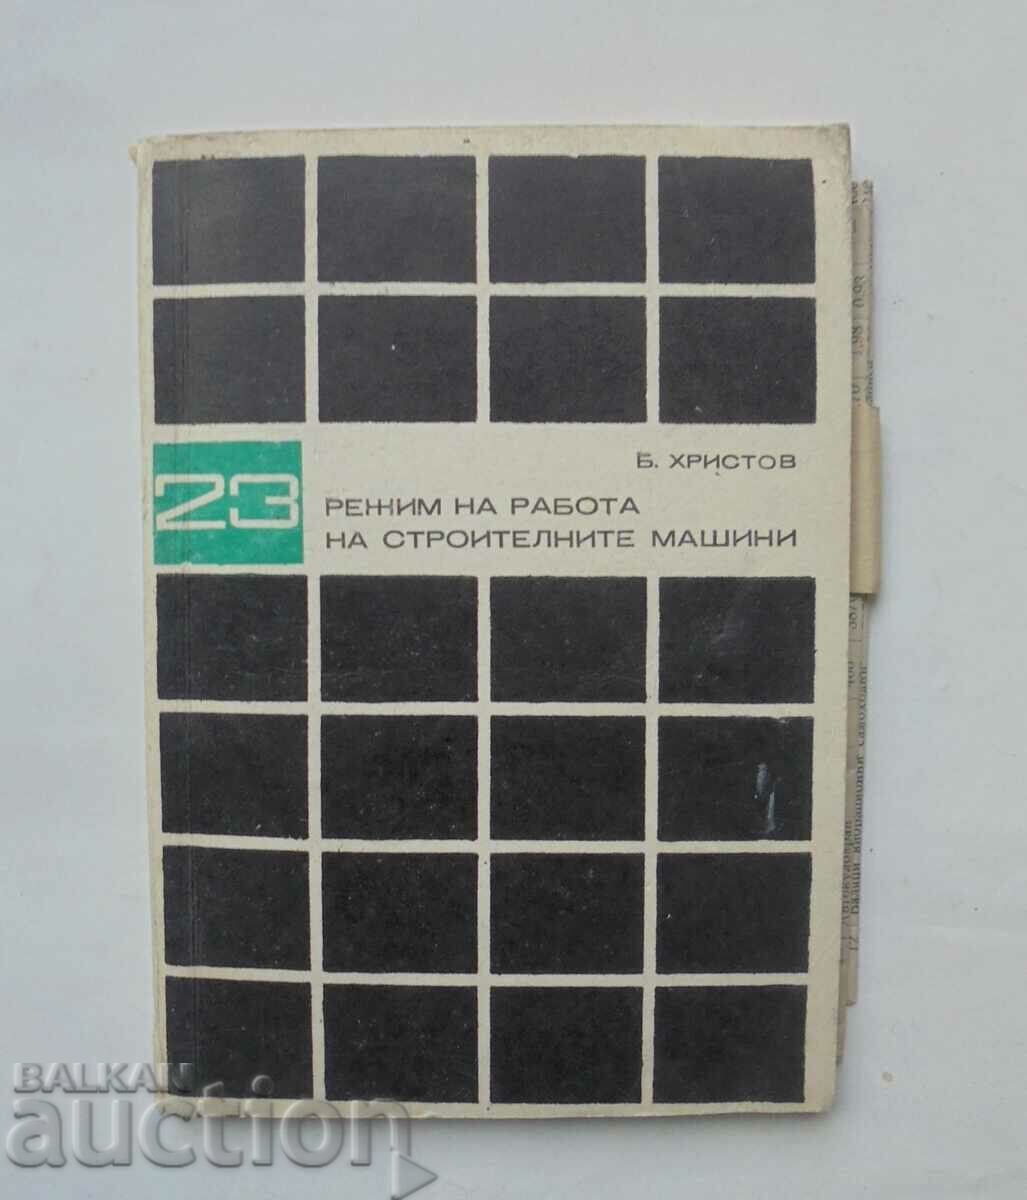 Τρόπος λειτουργίας μηχανημάτων κατασκευής - B. Hristov 1972